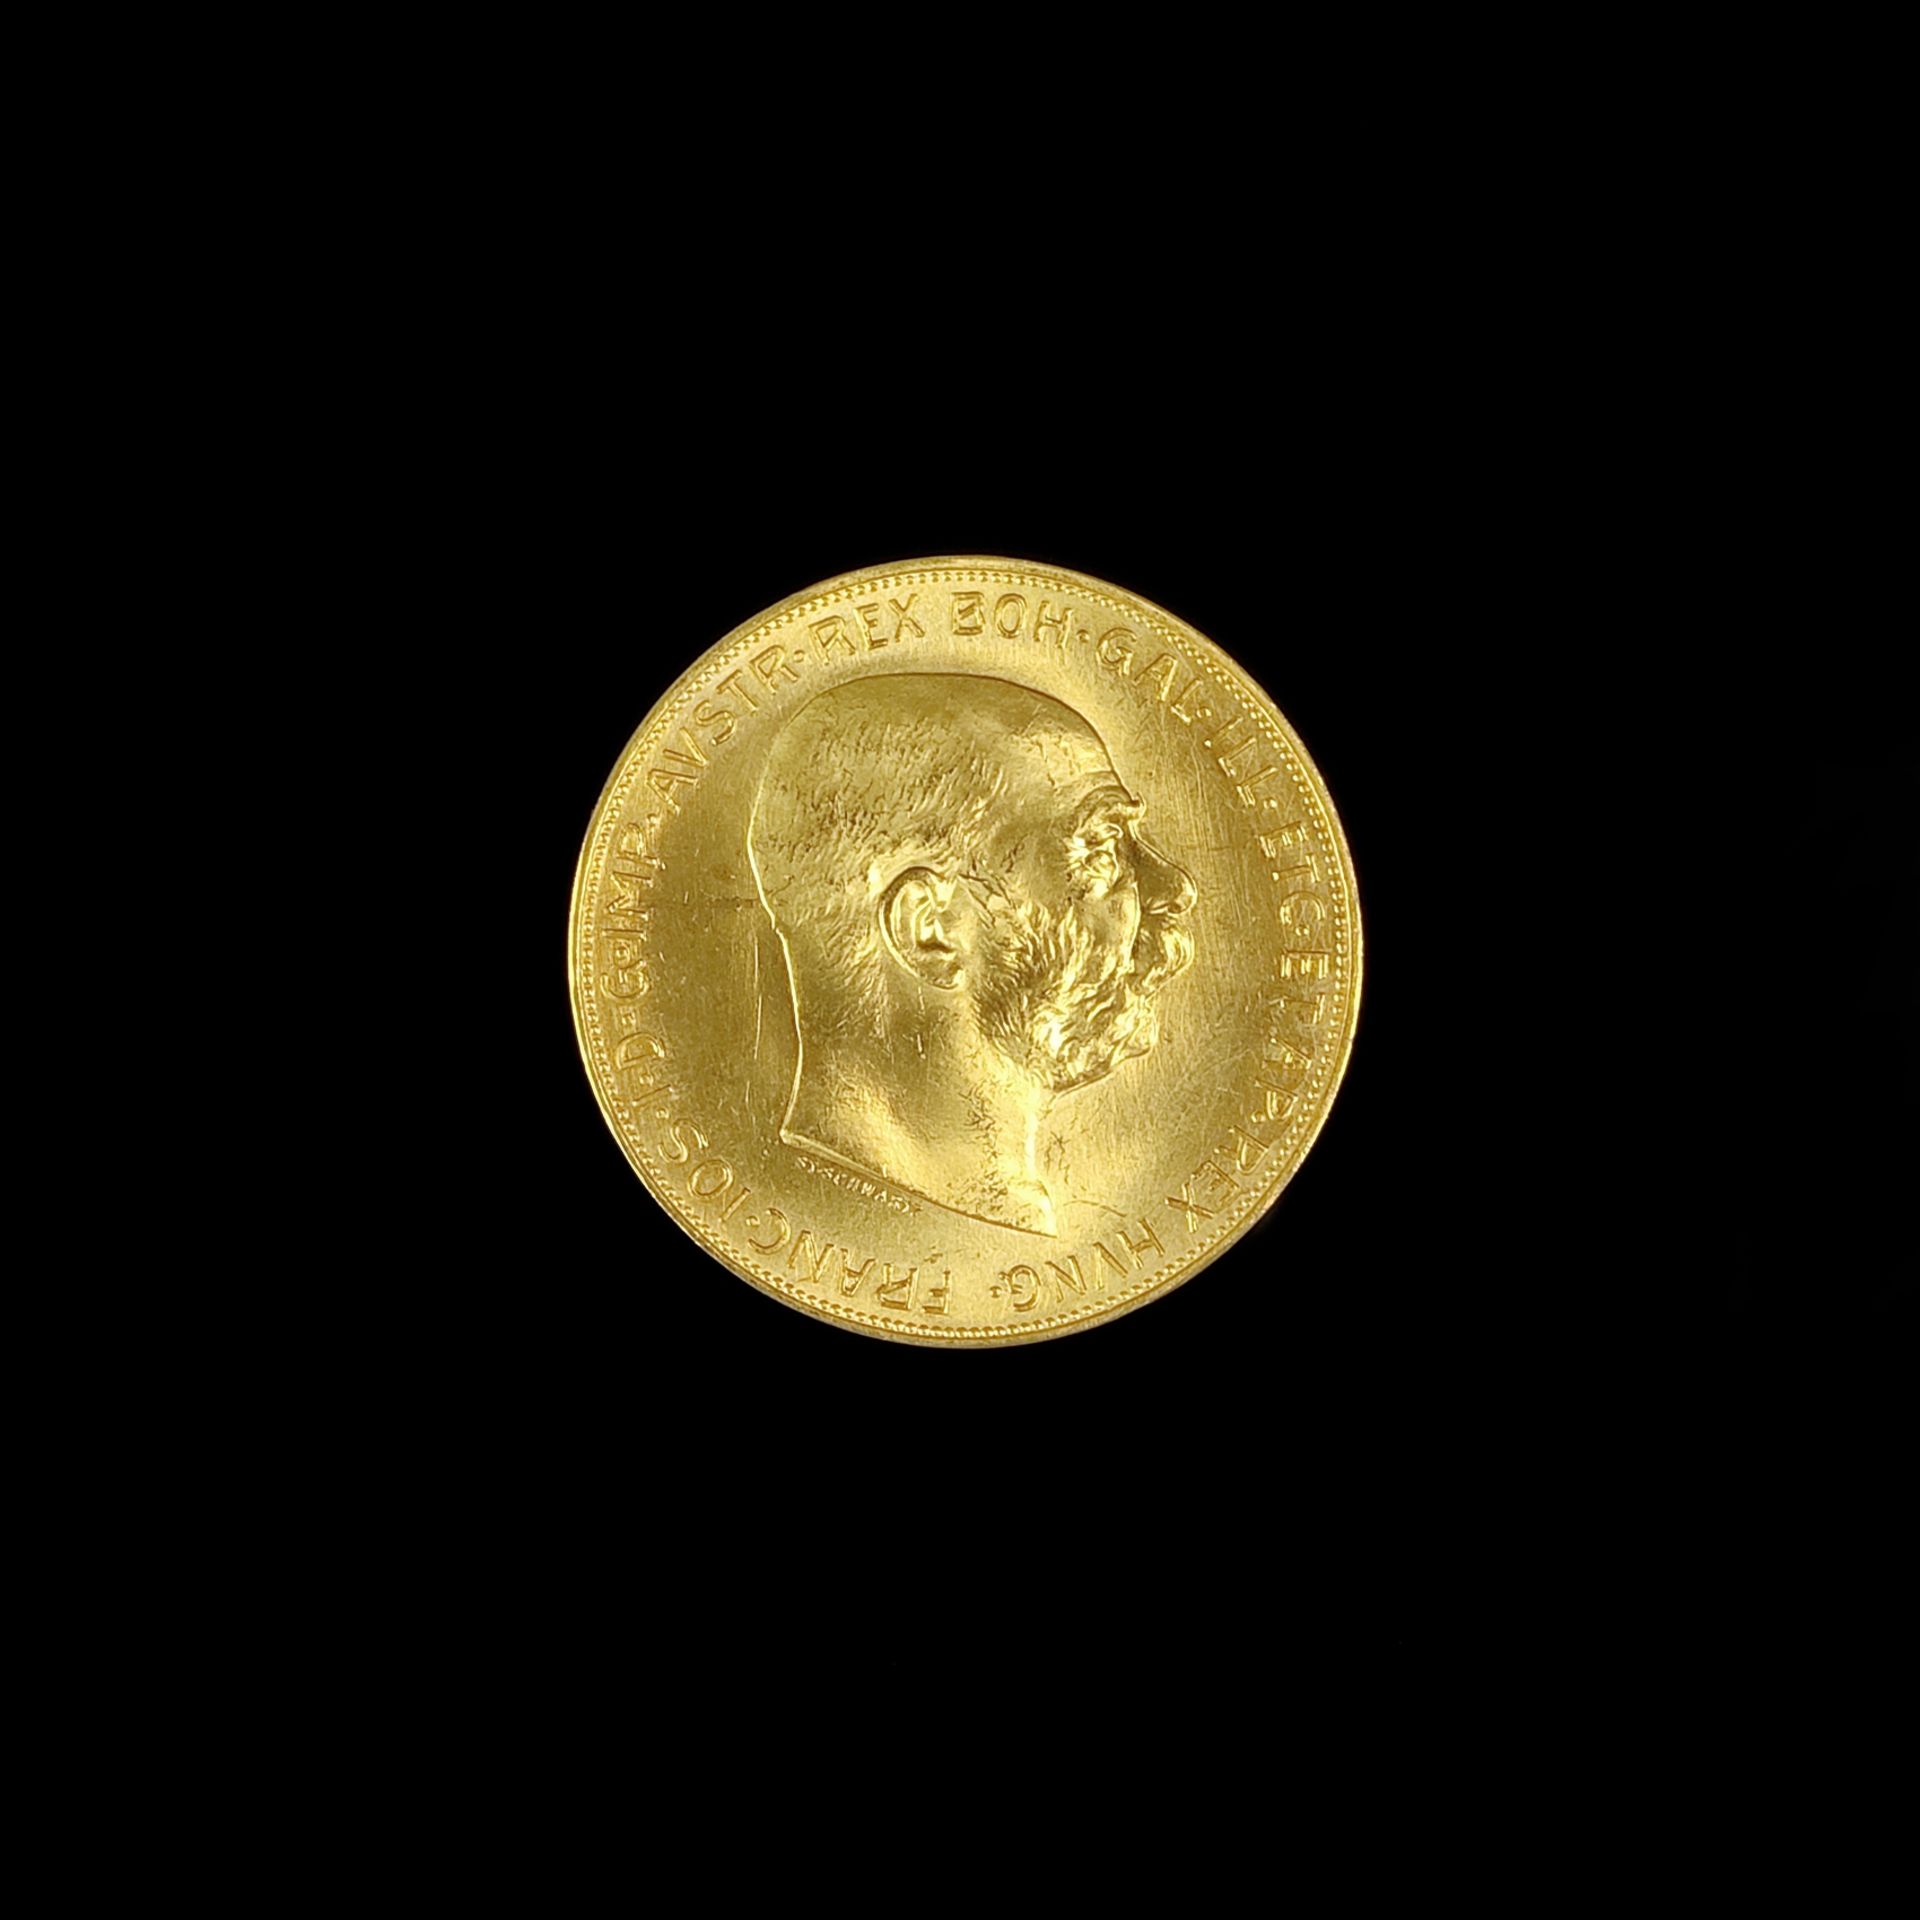 Gold coin, 100 Kronen / crowns, Franz Joseph I, Austria, 1915, 900 yellow gold, 33.84g, diameter 36